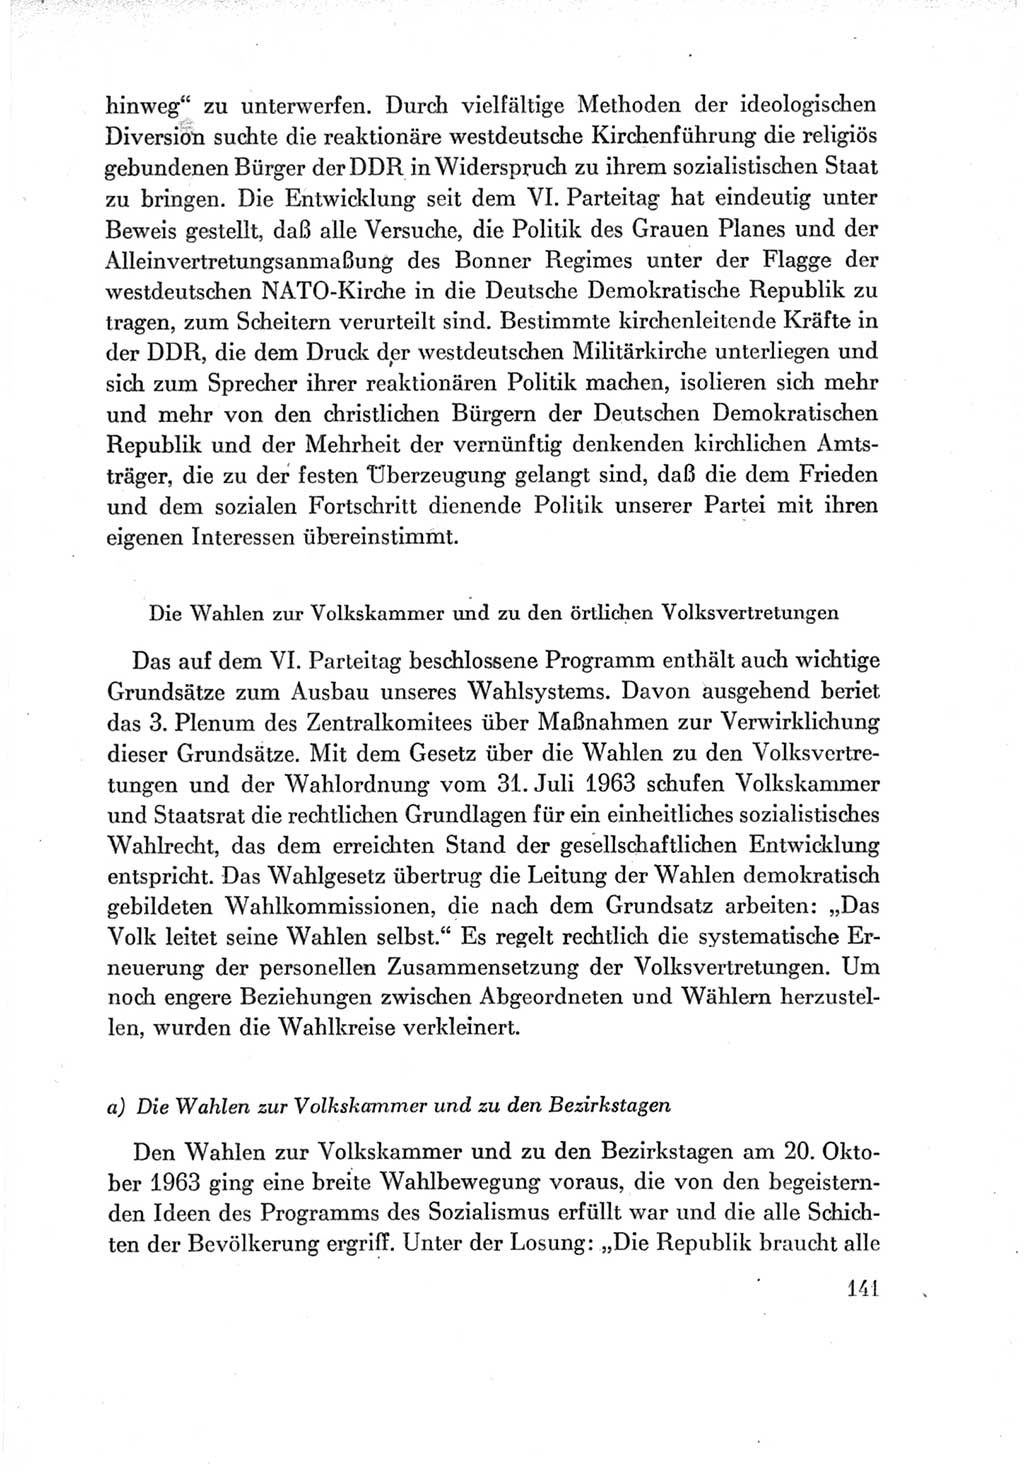 Protokoll der Verhandlungen des Ⅶ. Parteitages der Sozialistischen Einheitspartei Deutschlands (SED) [Deutsche Demokratische Republik (DDR)] 1967, Band Ⅳ, Seite 141 (Prot. Verh. Ⅶ. PT SED DDR 1967, Bd. Ⅳ, S. 141)